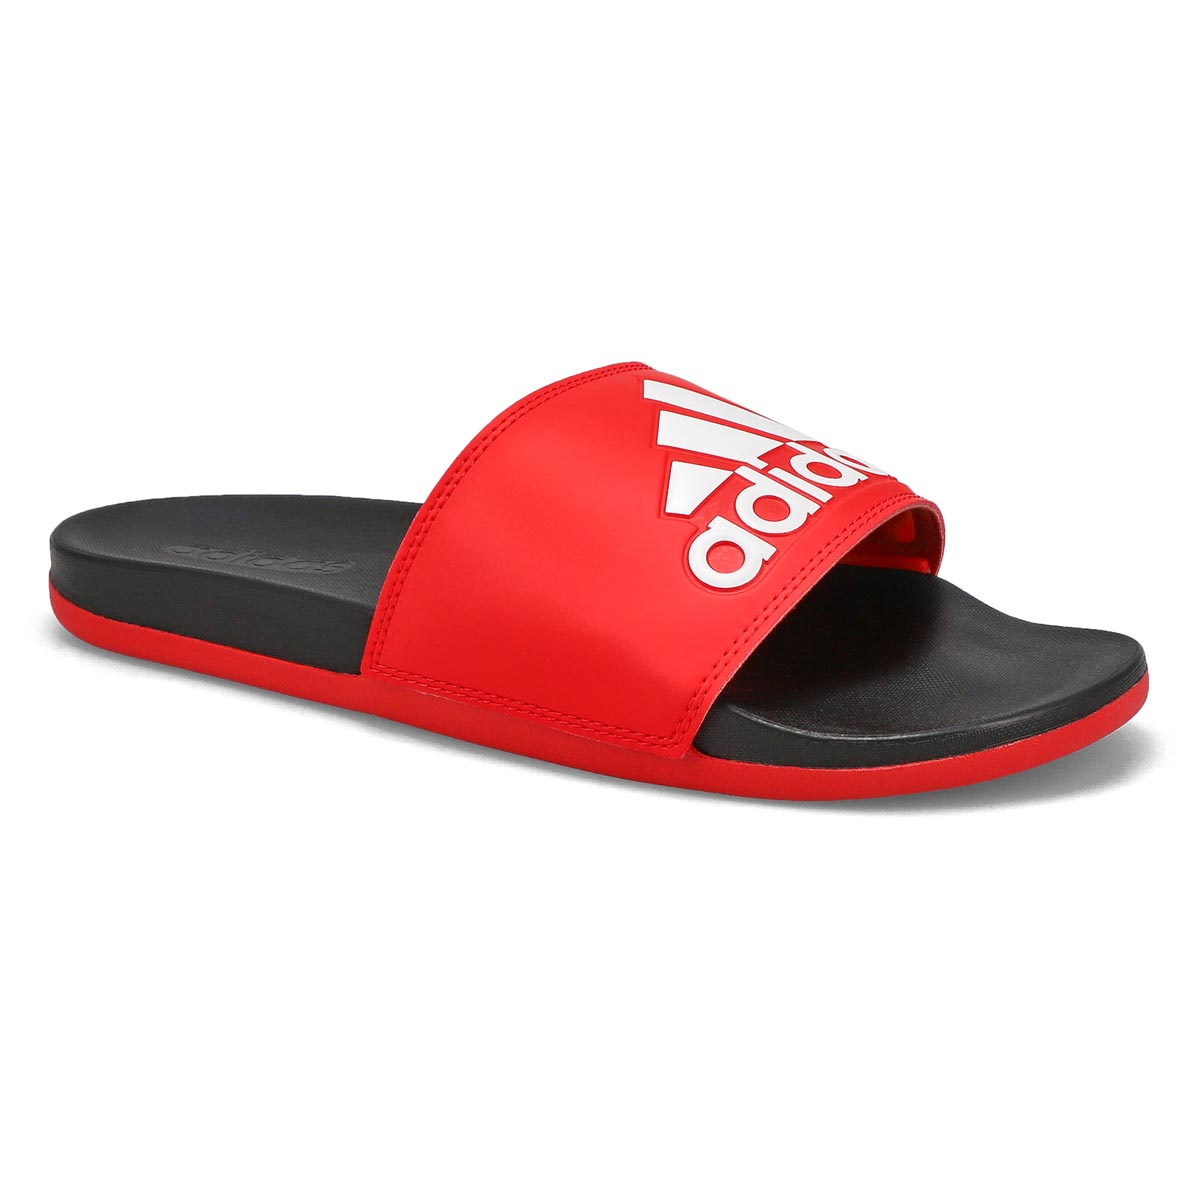 Men's Adilette Comfort Slide Sandal - Red/Black/White